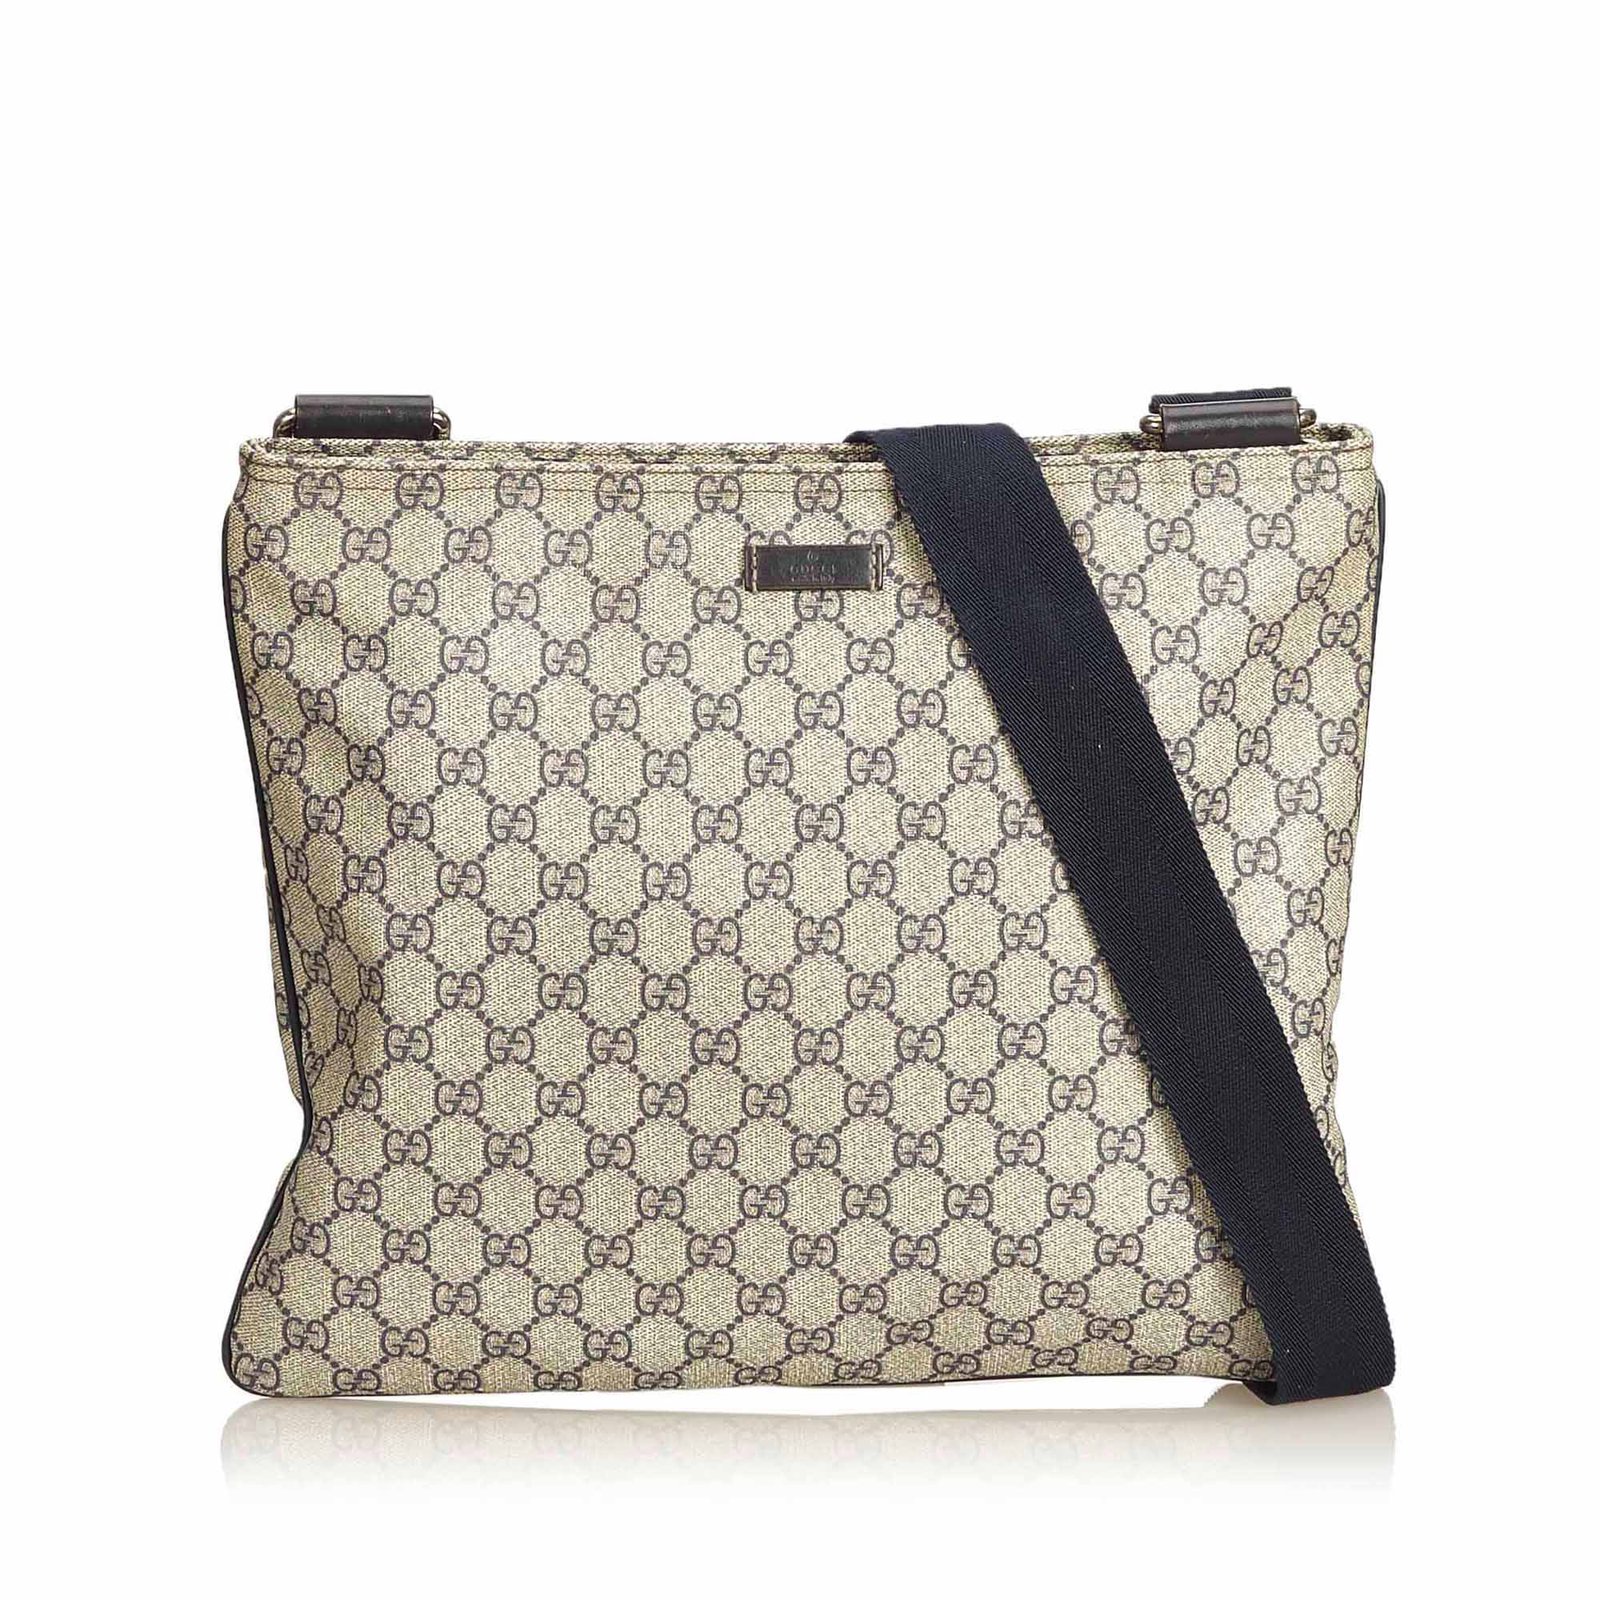 Gucci Guccissima Beige/Brown Small Crossbody Bag Good Condition